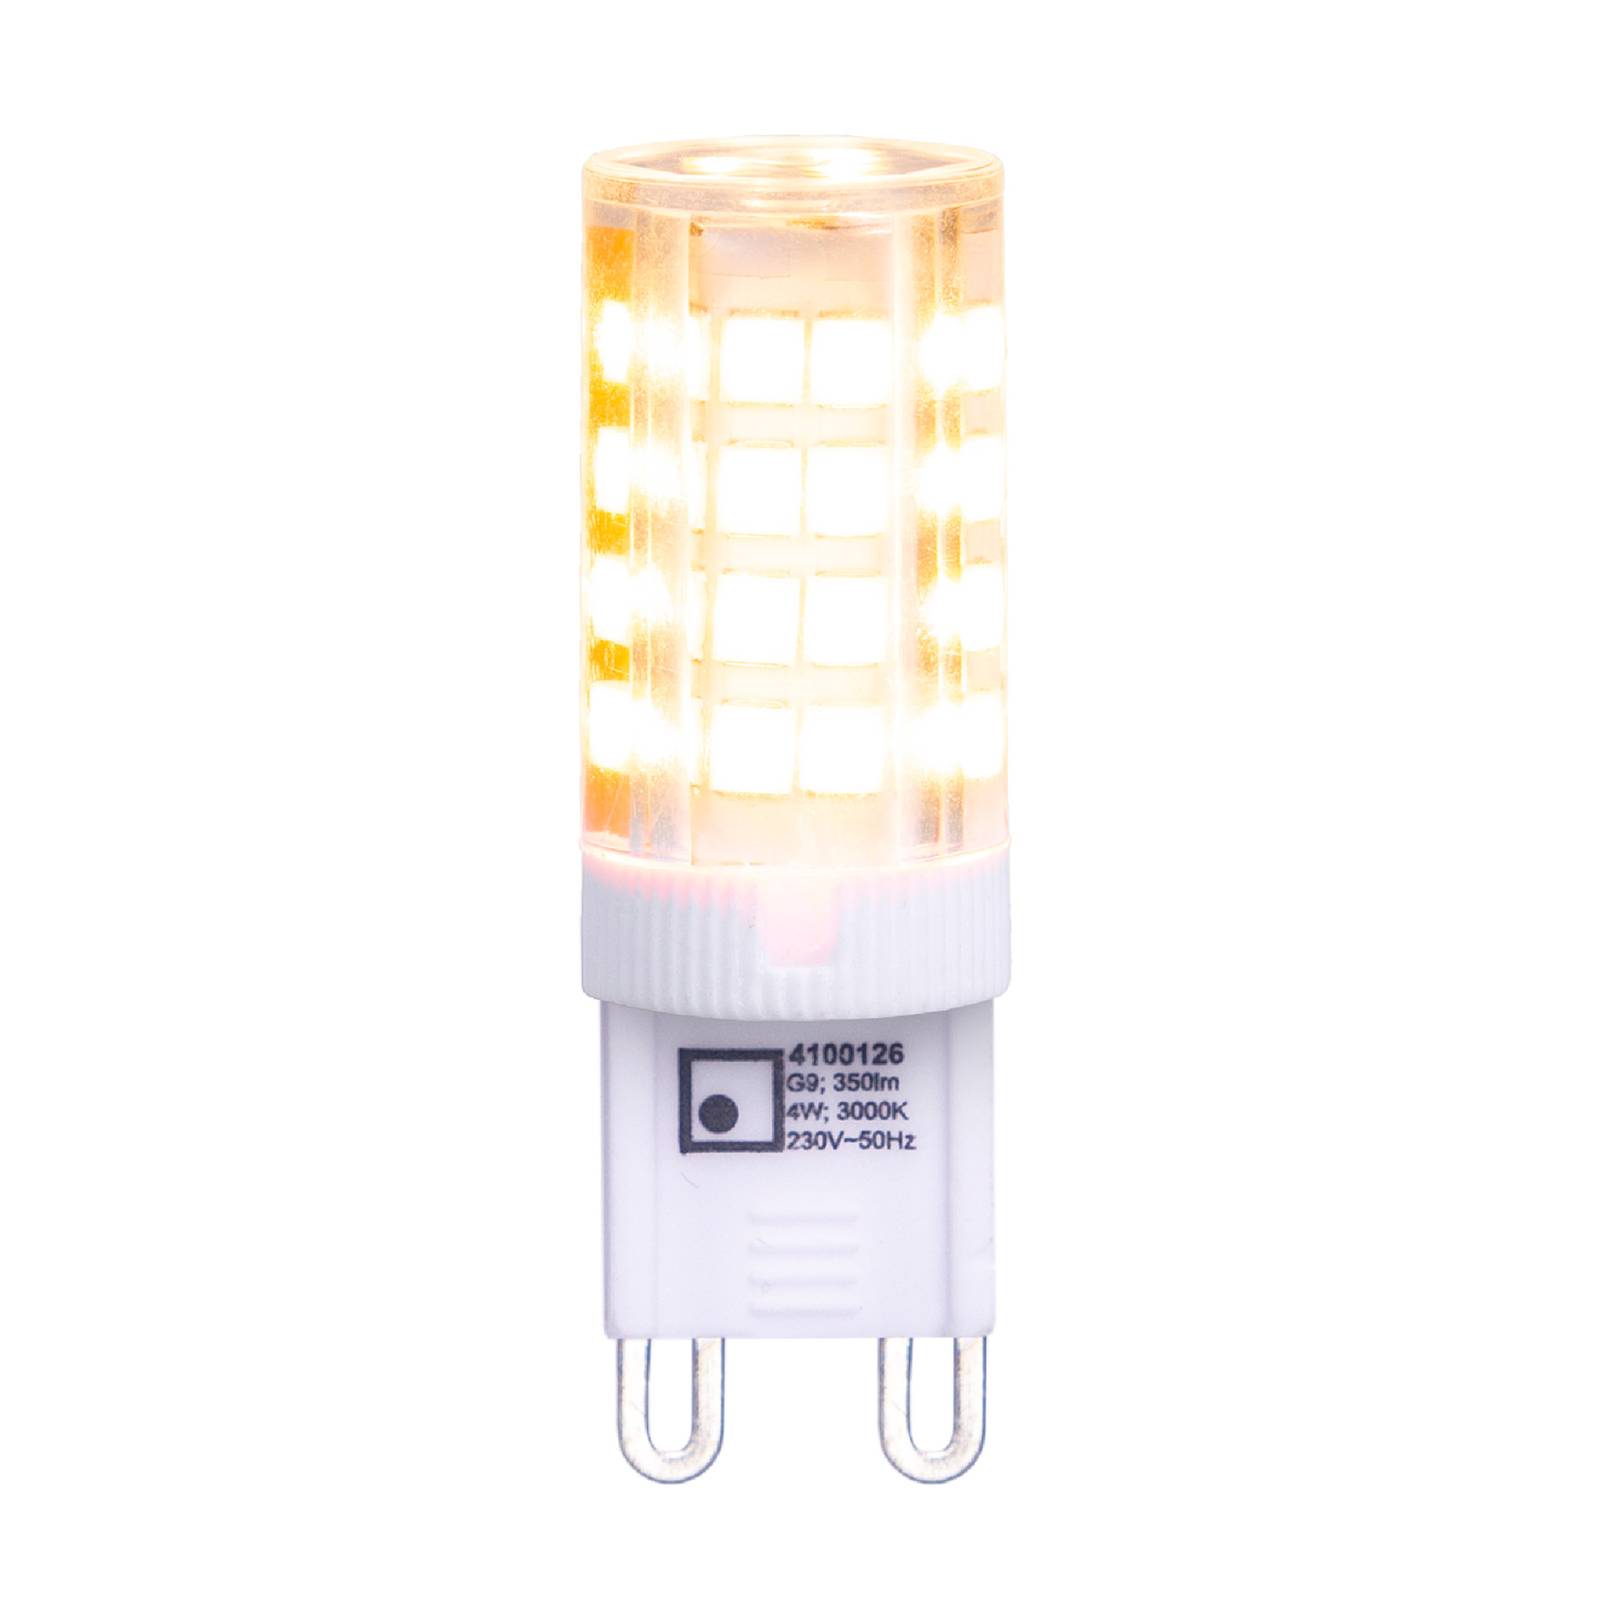 Näve Ampoule broche LED G9 3,5W blanc chaud, 350 lm x6